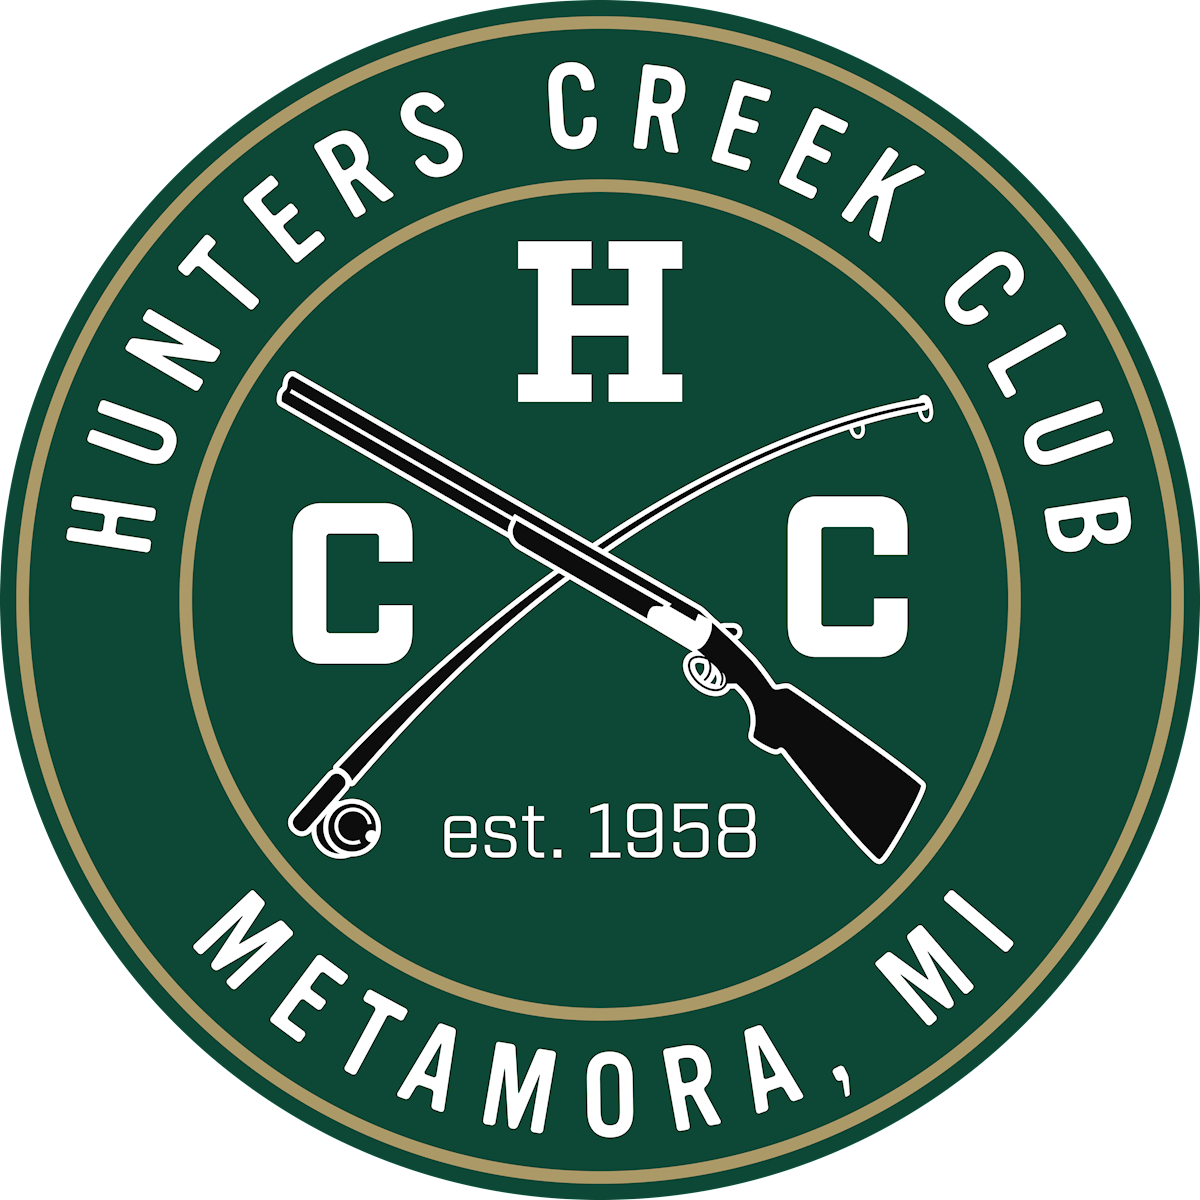 Hunters Creek Club